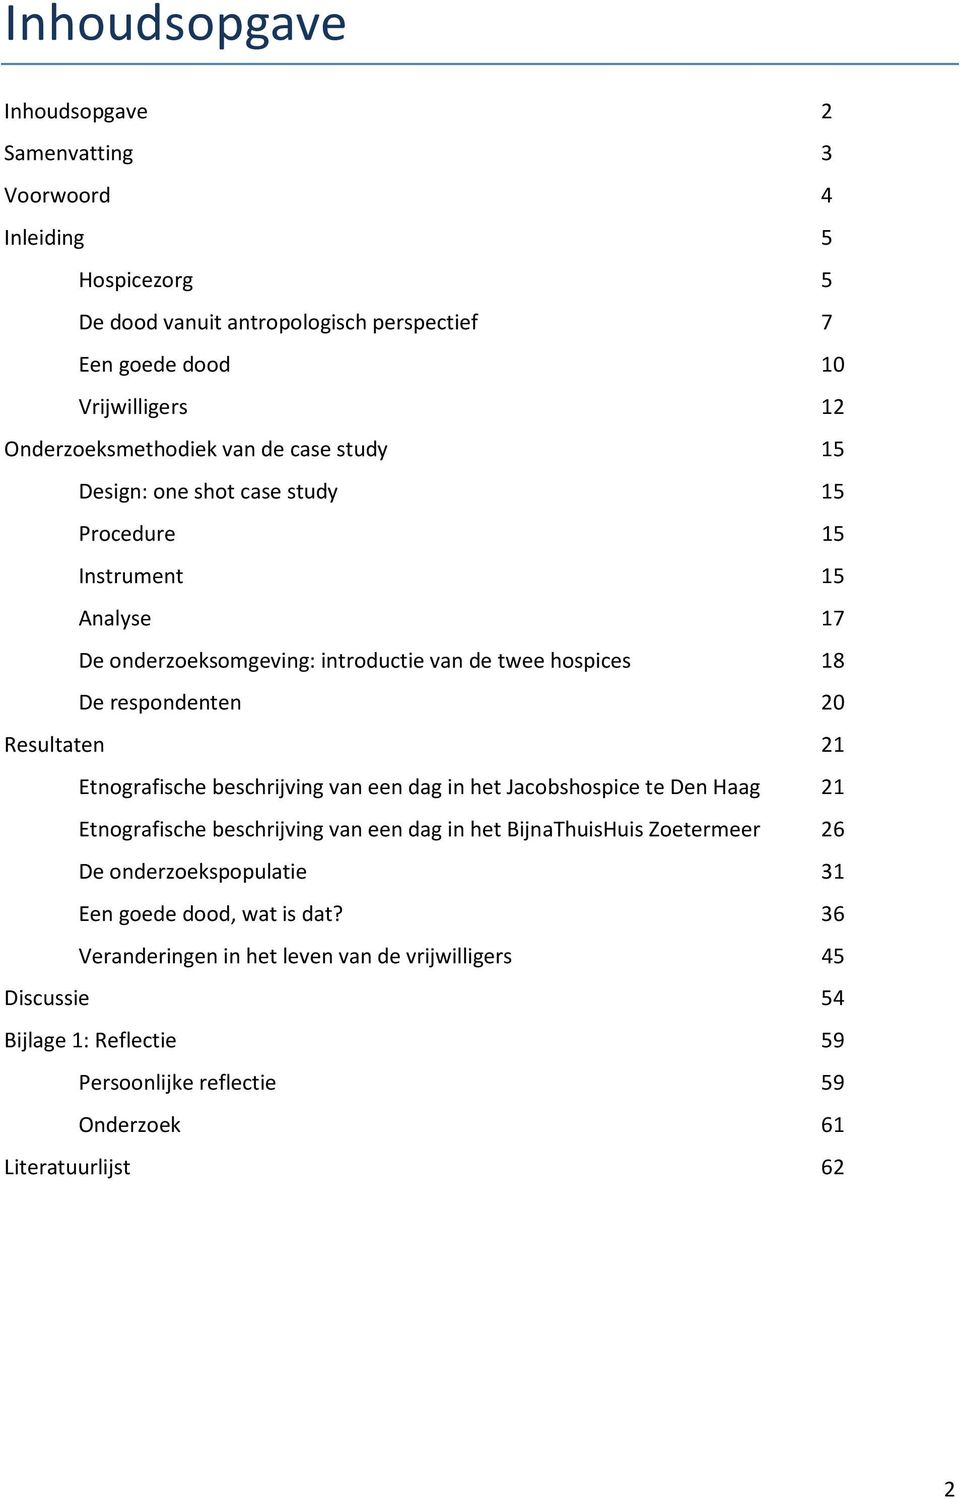 respondenten 20 Resultaten 21 Etnografische beschrijving van een dag in het Jacobshospice te Den Haag 21 Etnografische beschrijving van een dag in het BijnaThuisHuis Zoetermeer 26